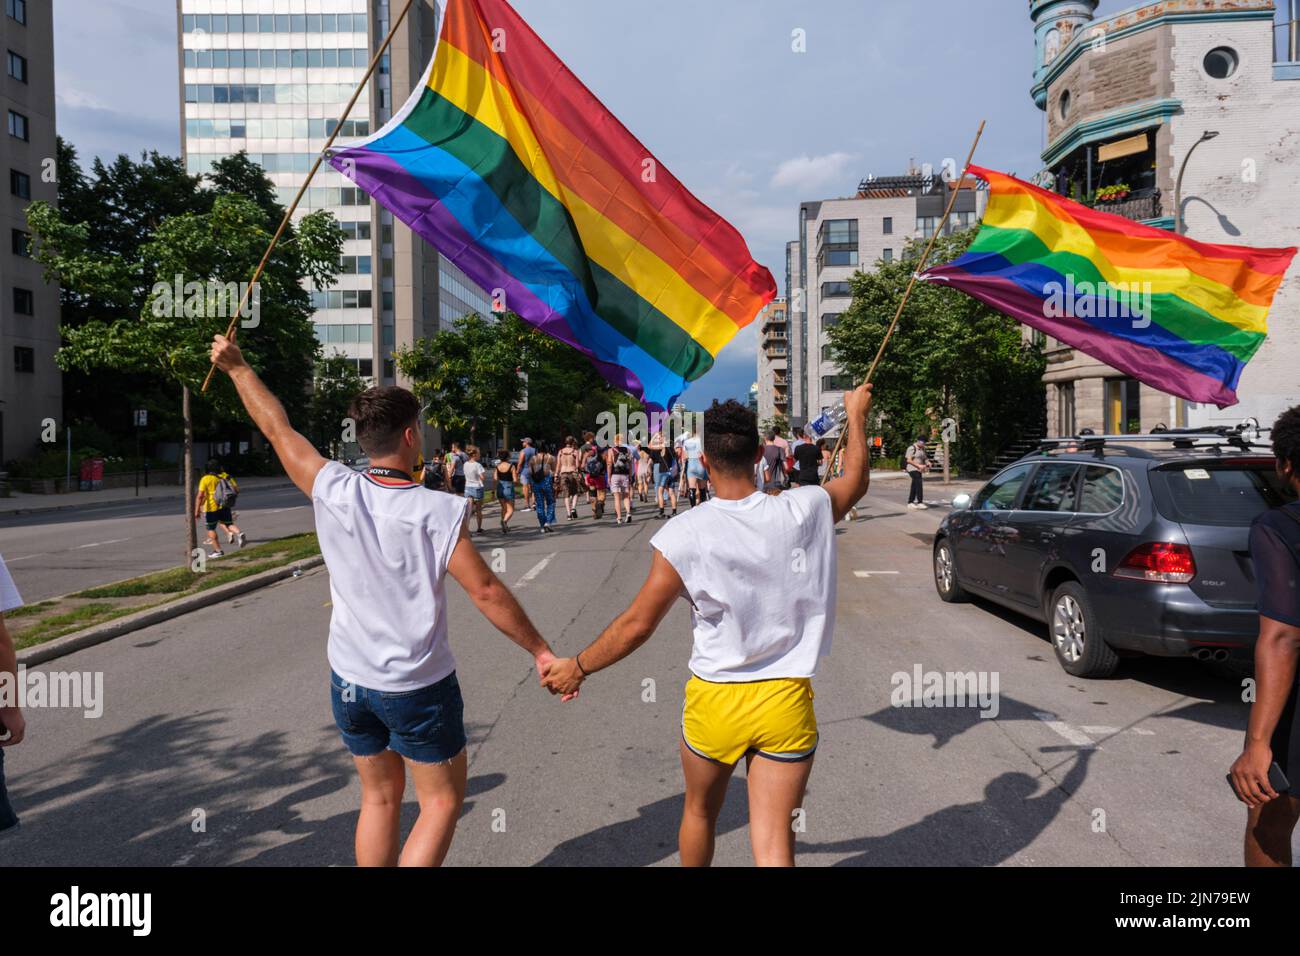 Montreal, CA - 7 de agosto de 2022: Dos hombres jóvenes que toman la mano participan en la marcha espontánea del orgullo gay después de que el desfile oficial del orgullo fuera cancelado Foto de stock